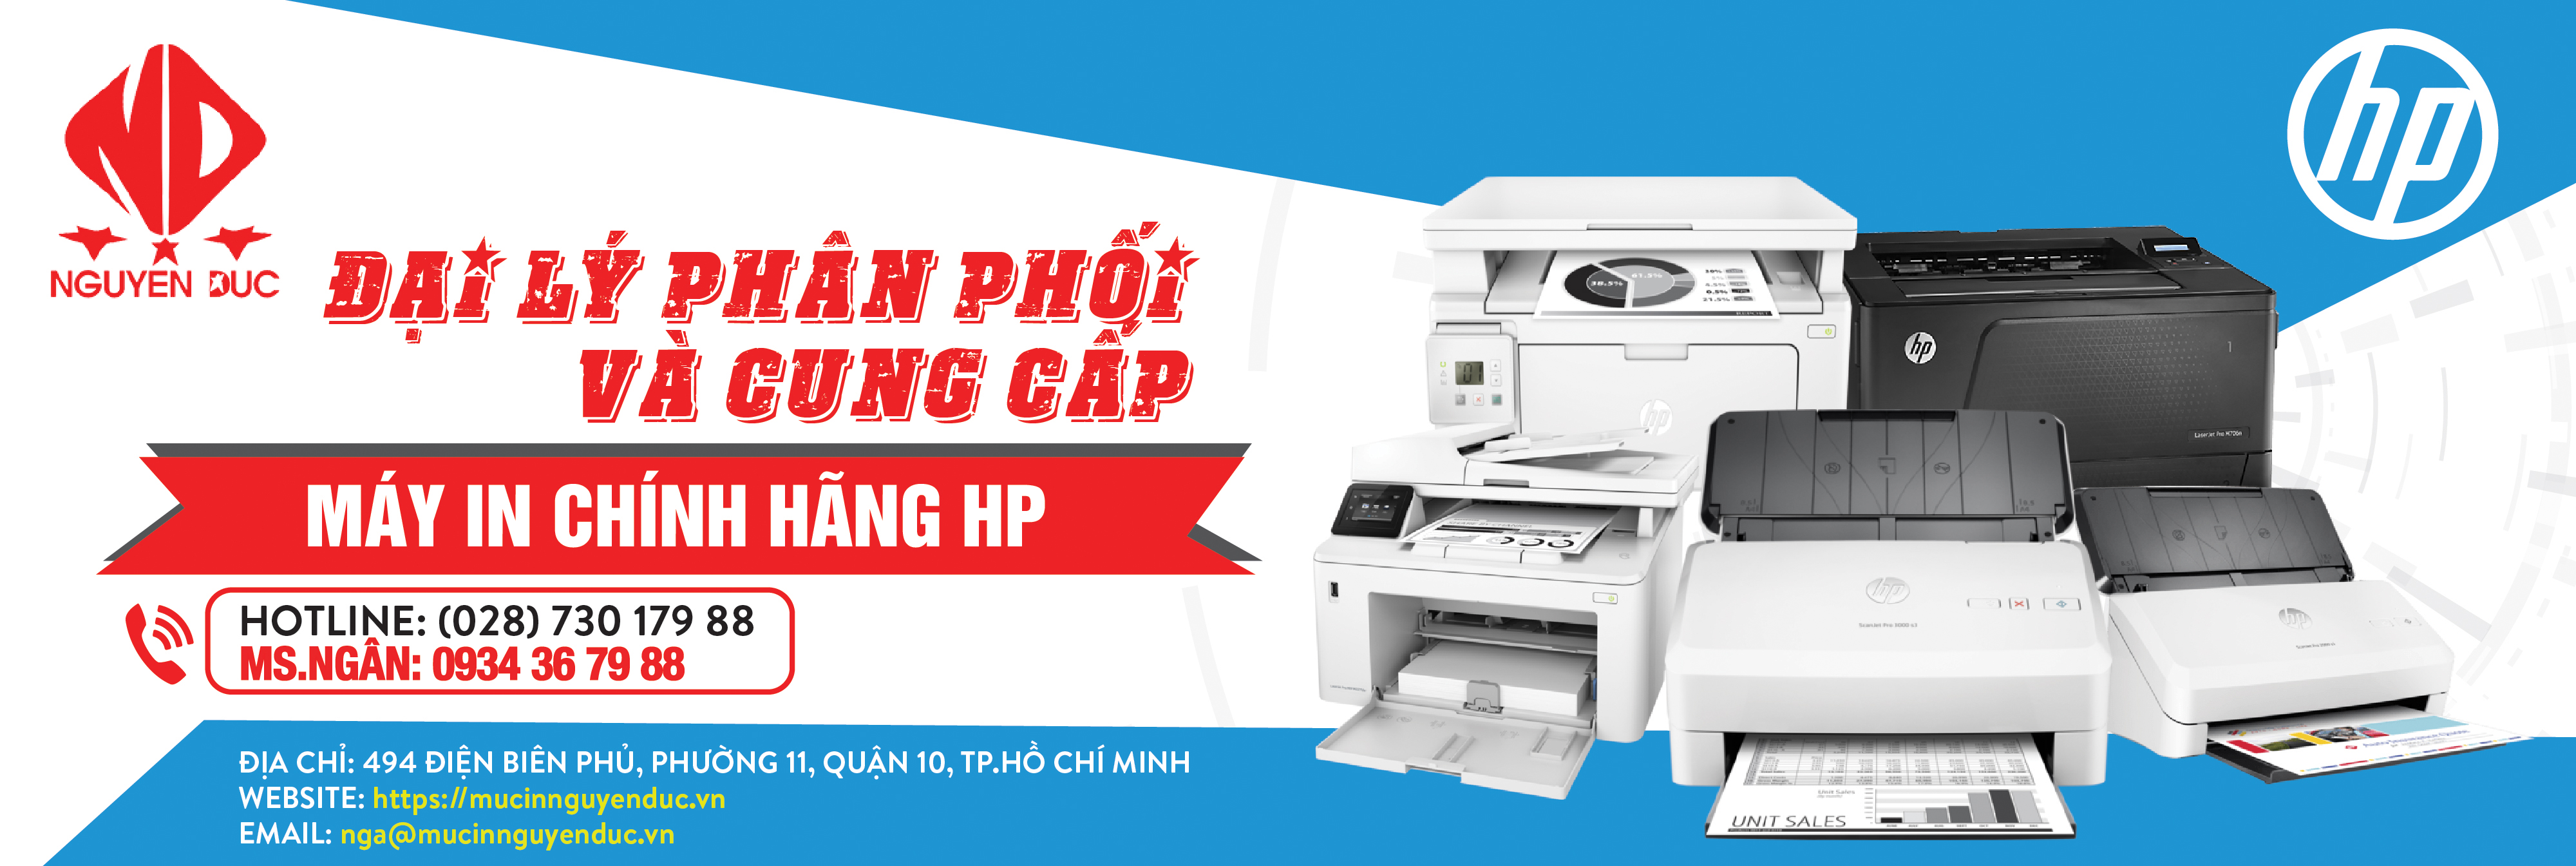 Đại lý phân phối máy in HP Laserjet Pro 227SDN (G3Q74A) chính hãng, giao hàng tại tỉnh Lạng Sơn